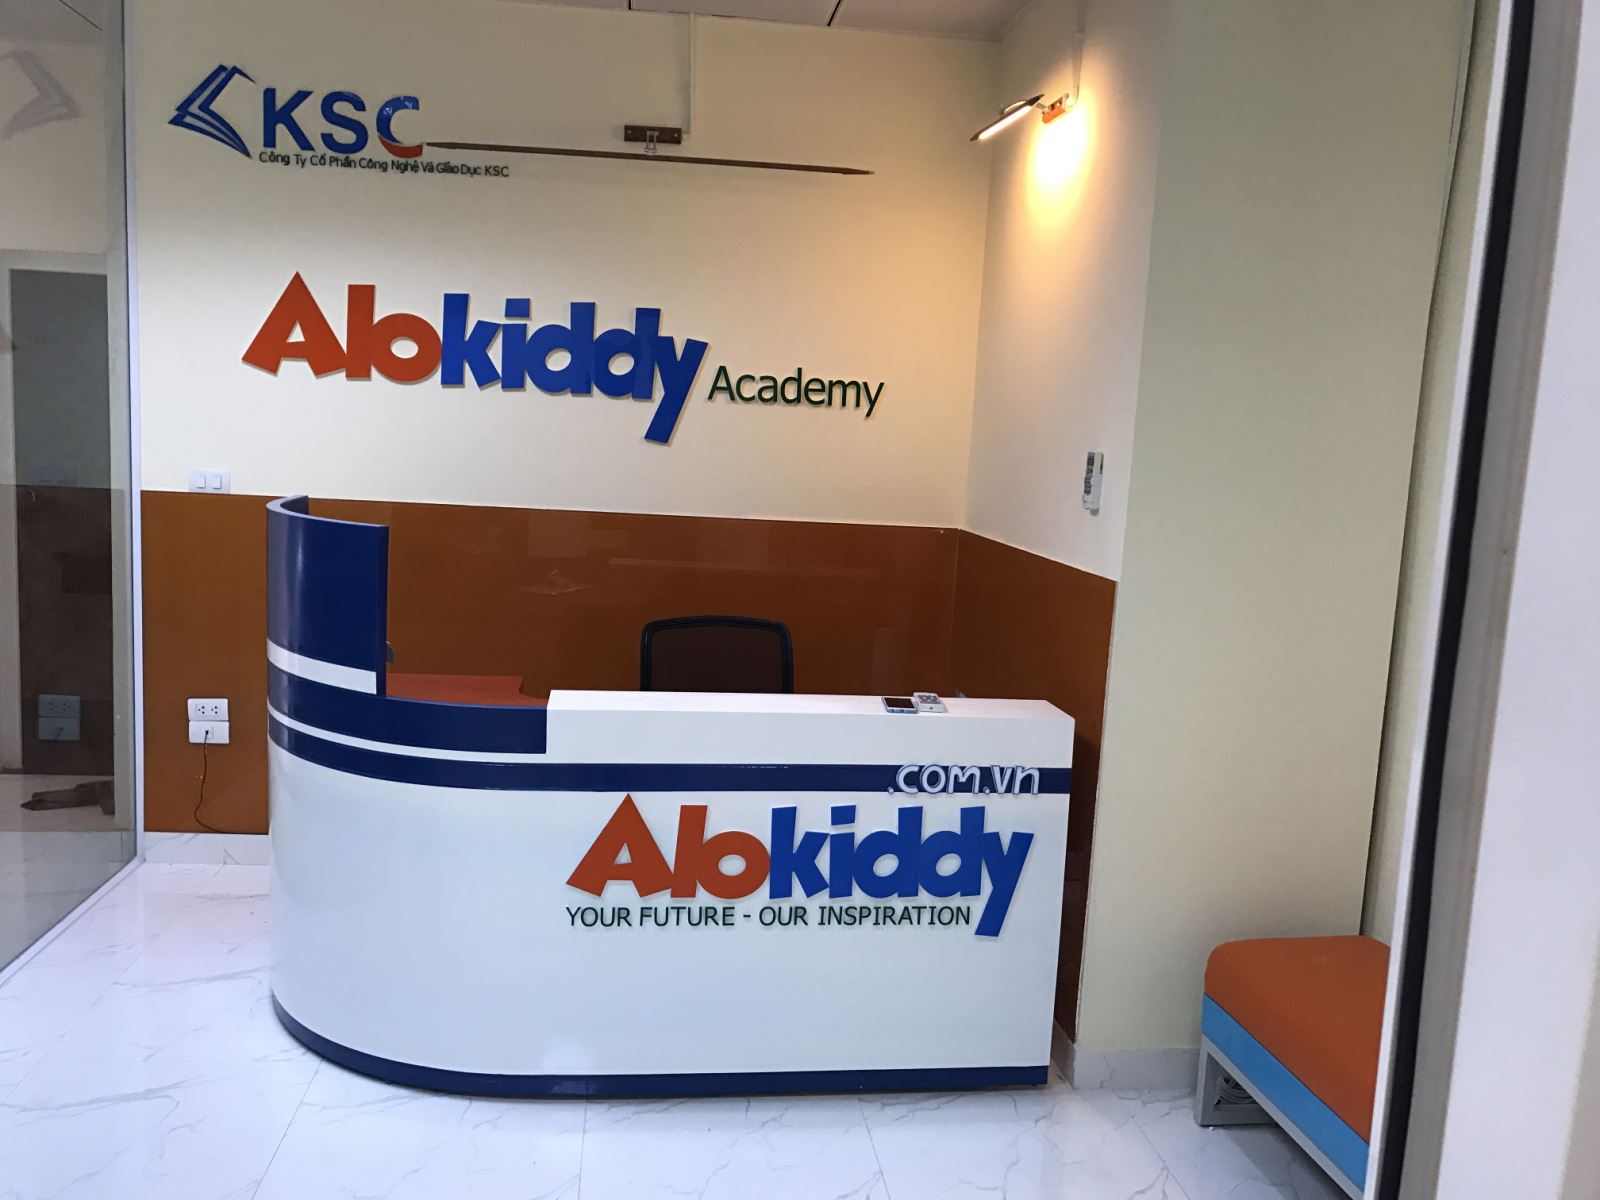 Trung Tâm tiếng Anh cho trẻ em Alokiddy Academy ở đâu?